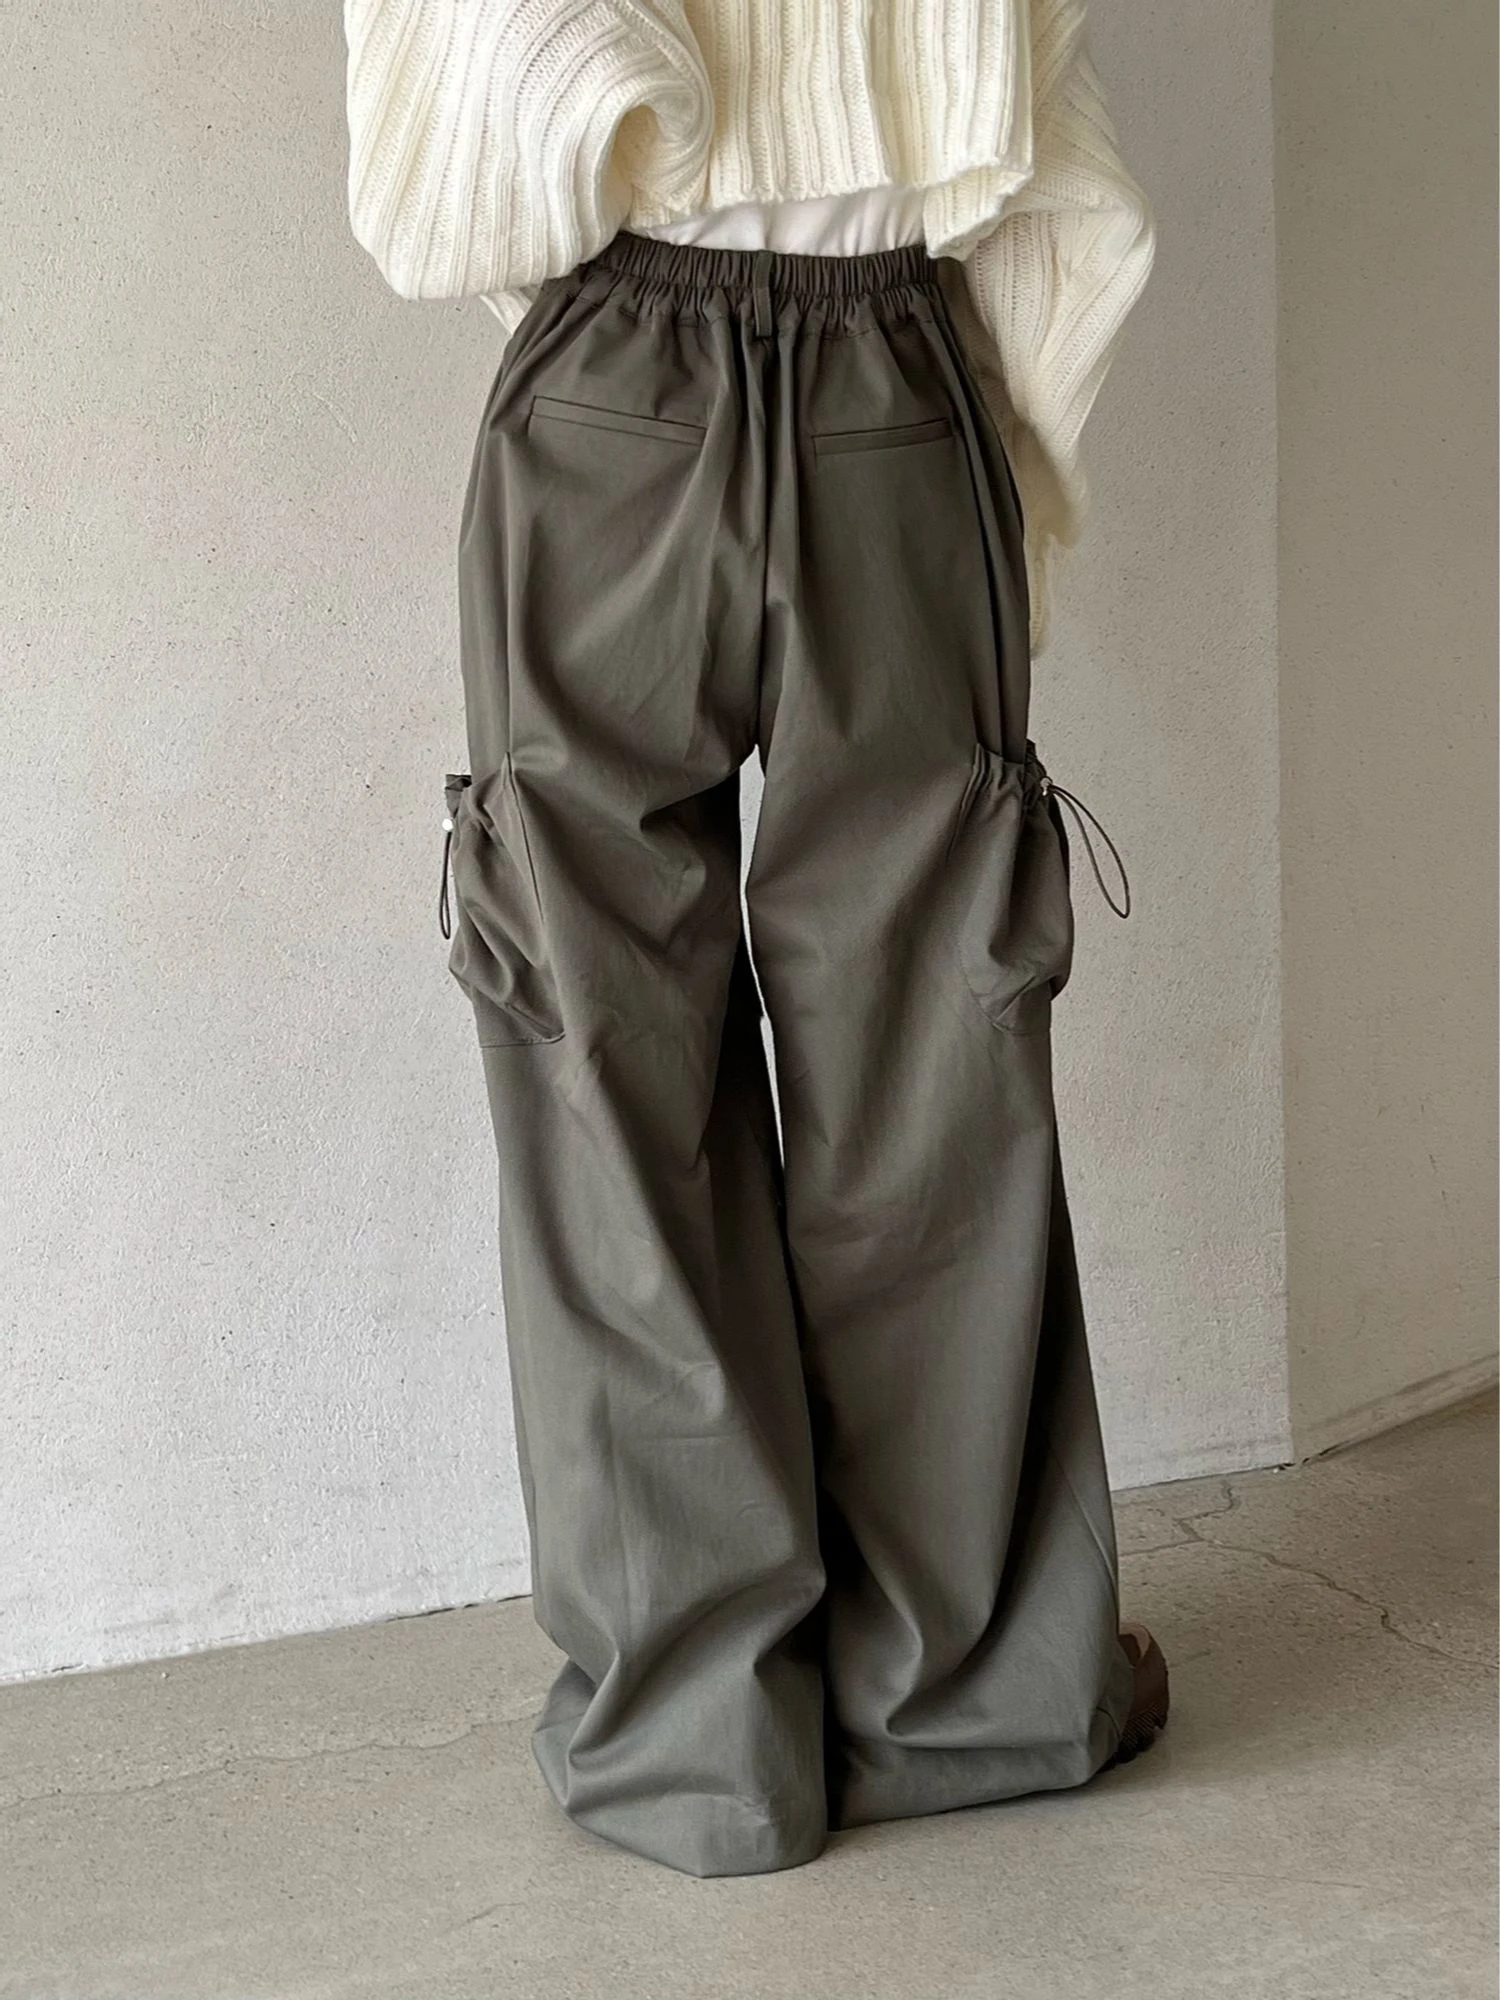 

Брюки Женские однотонные на шнурке, повседневные Длинные свободные штаны с большими карманами, на пуговицах, с эластичным поясом